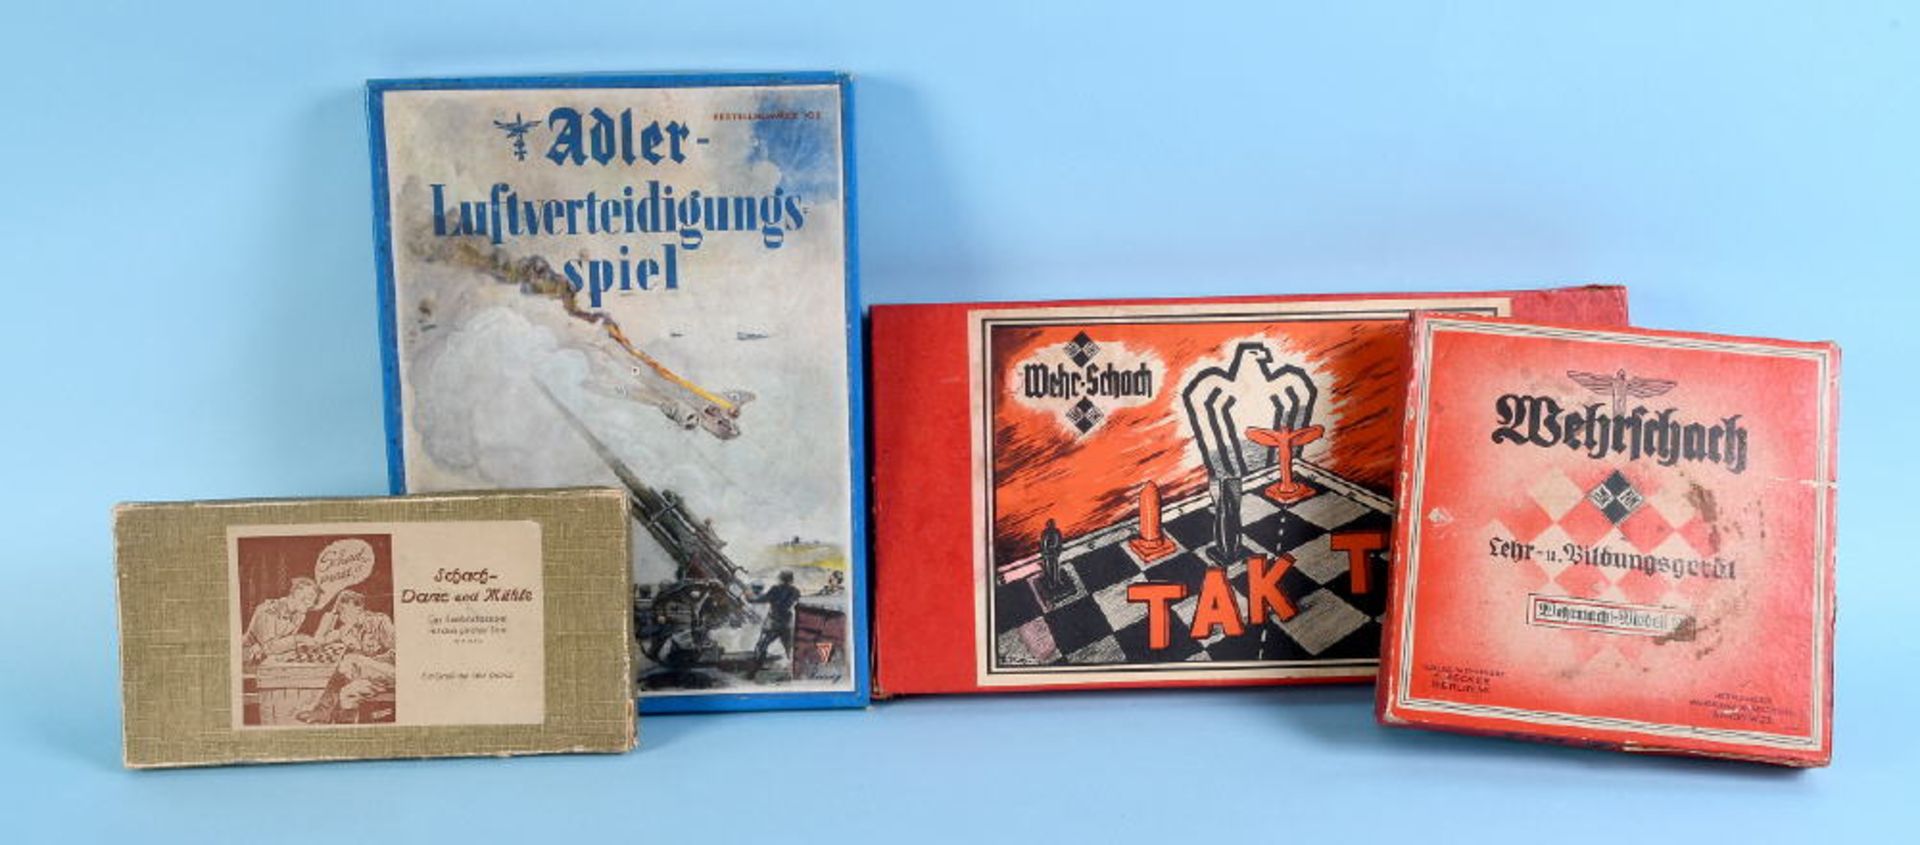 Brettspiele, 4 Stück2x Wehrschach "Tak-Tik", je 1 Adler-Luftverteidigungsspiel, Schach- Dame und